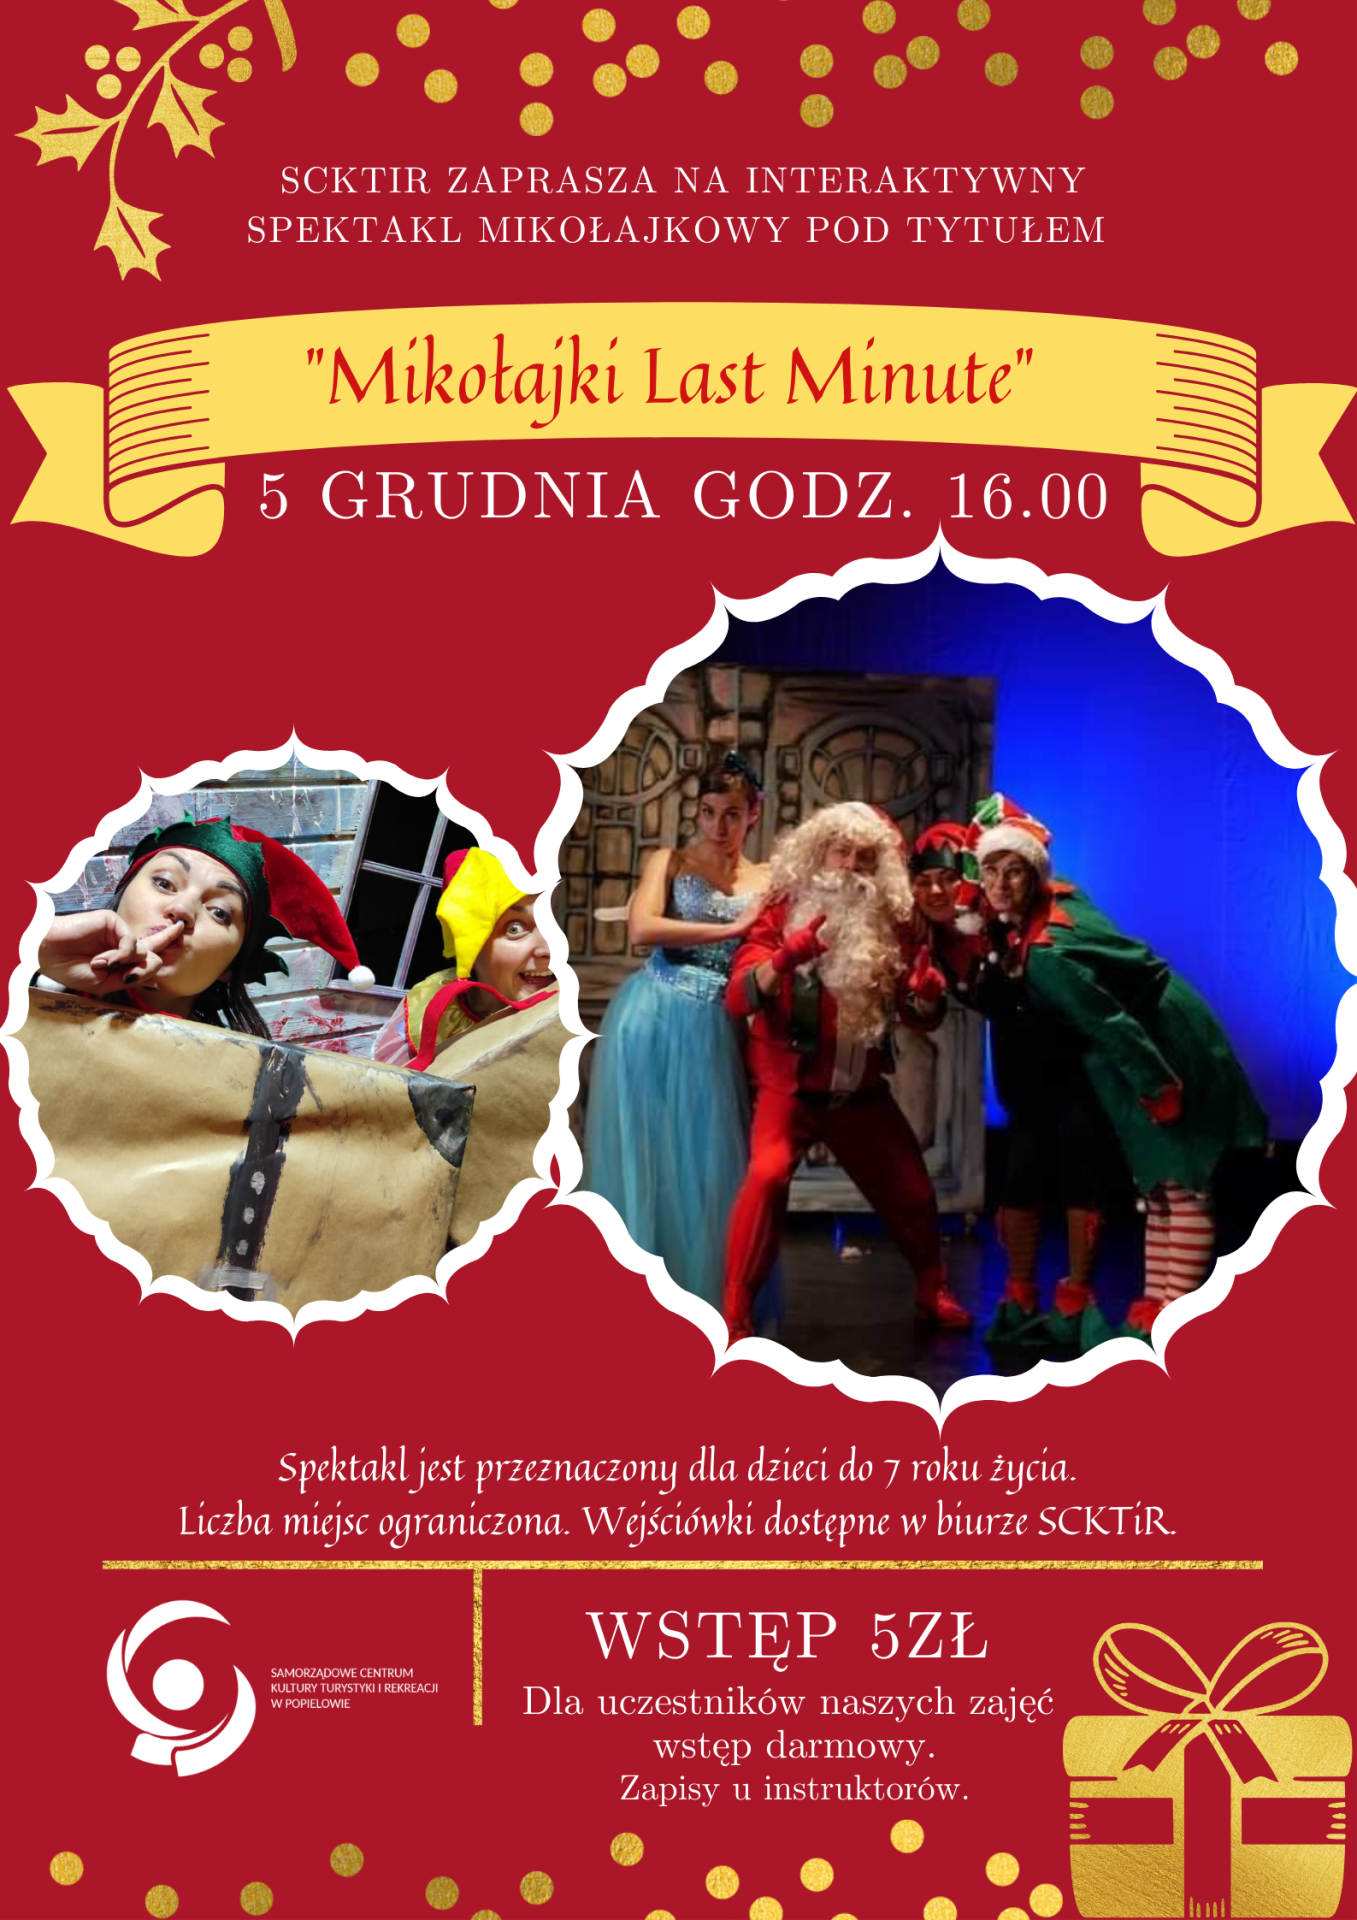 Interaktywny spektakl dla dzieci Mikołajki Last Minute 